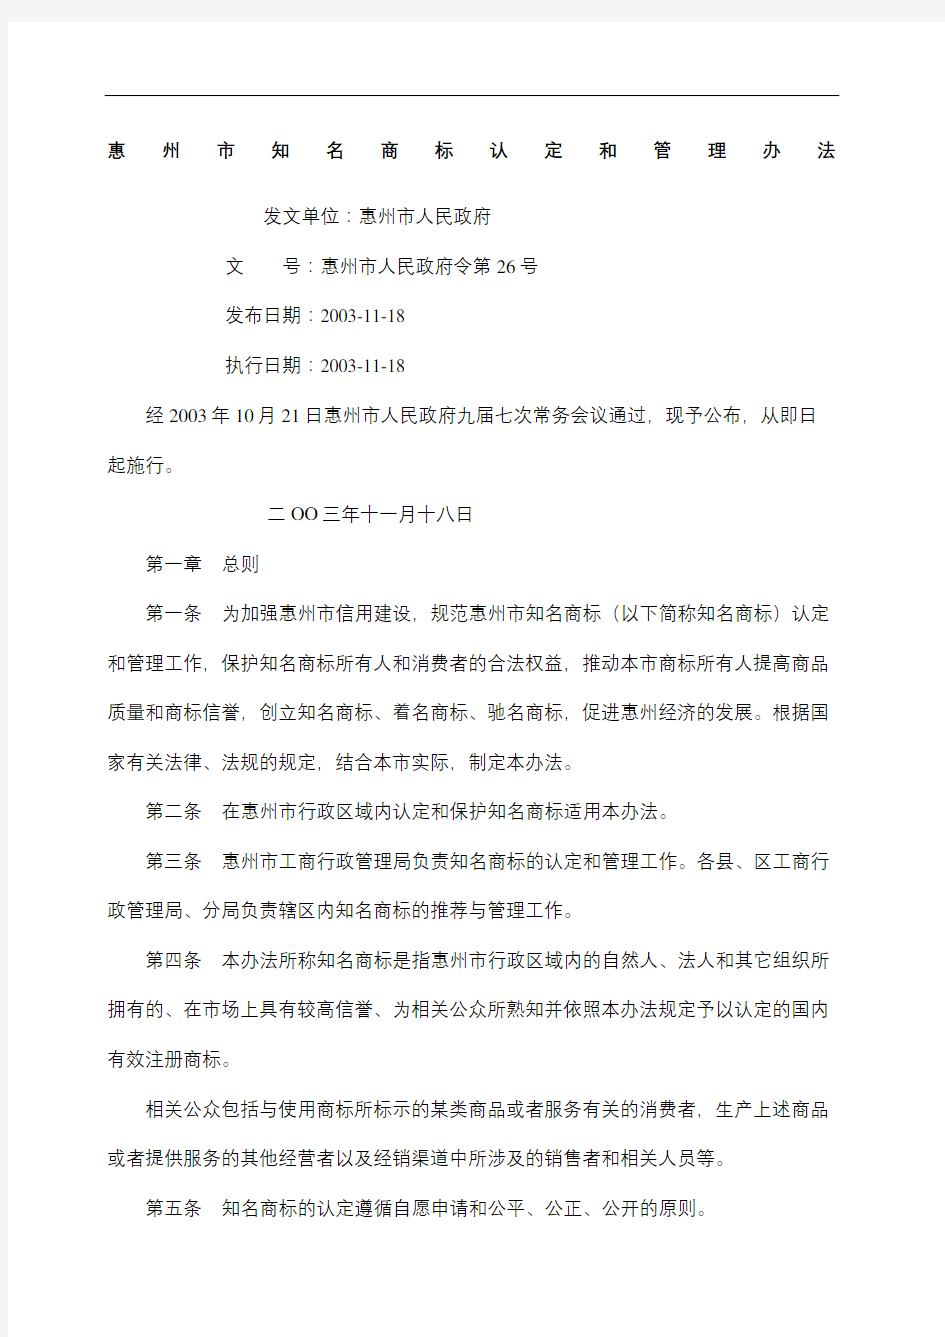 惠州市知名商标认定和管理规定